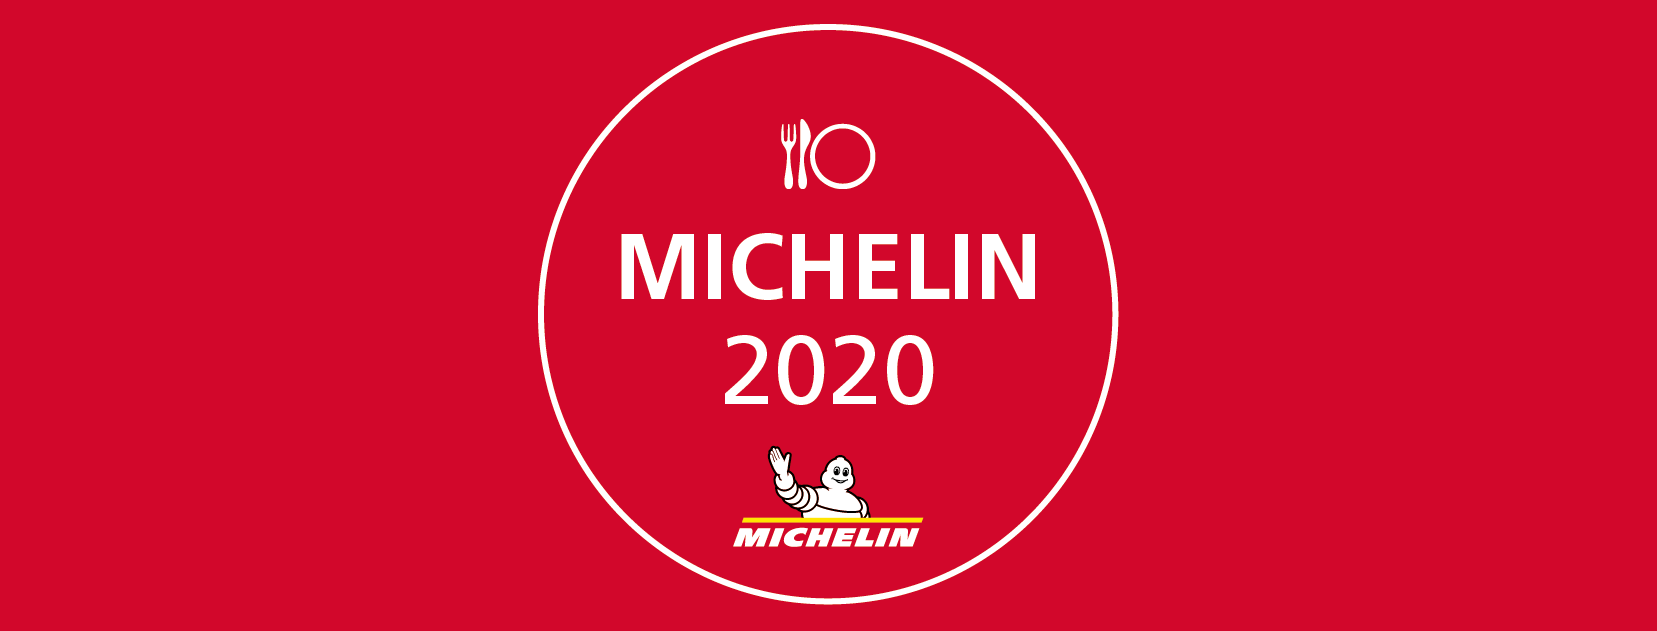 La Guía Michelin 2020 vuelve a situar a Es Arraïtzes entre los 8 mejores restaurantes de cocina peruana de España